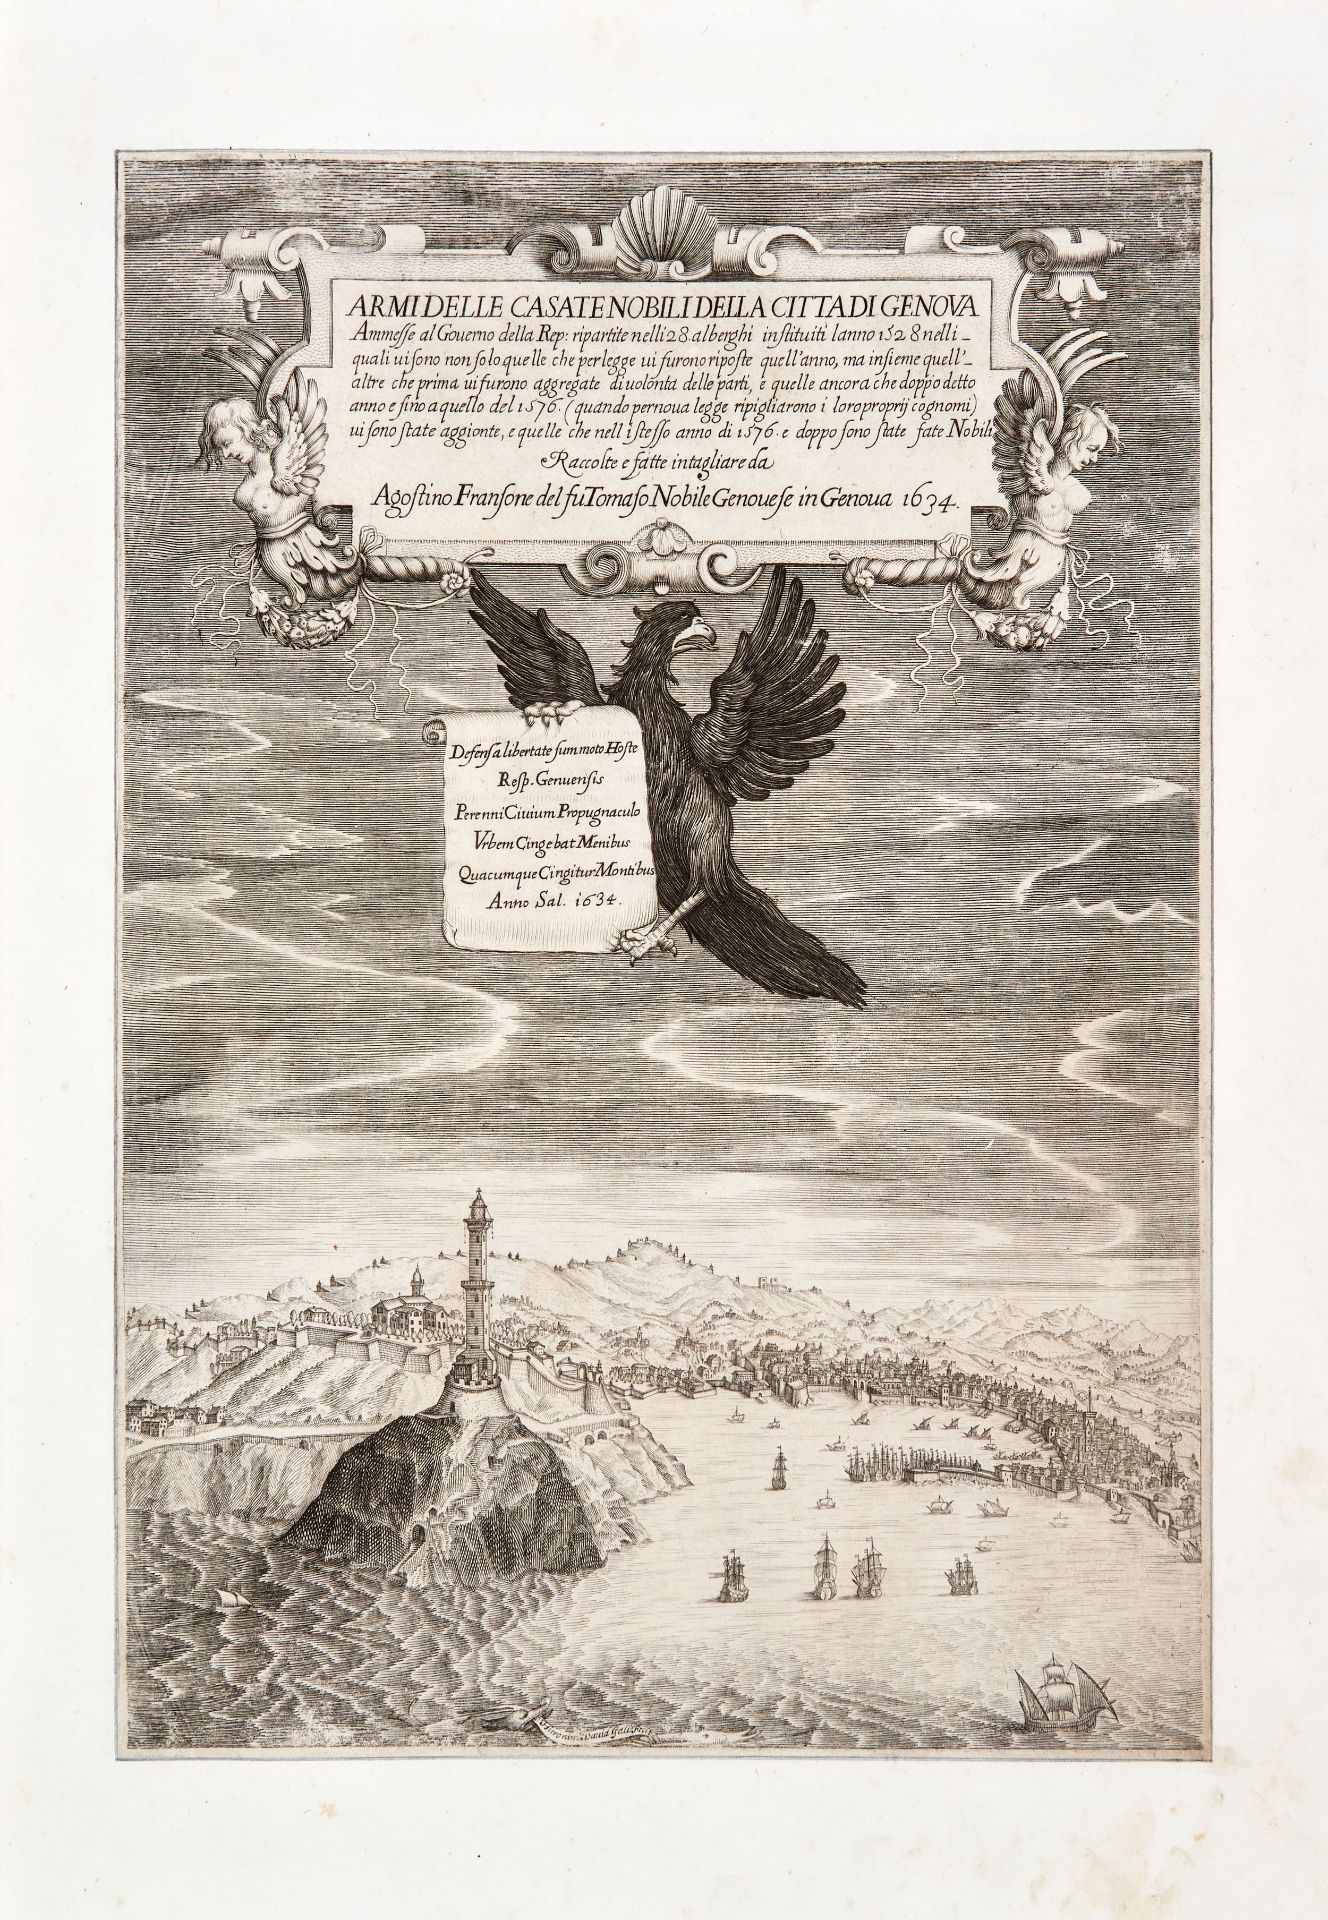 [GENOVA] FRANSONE, Agostino (1573-1658). Nobility of Genoa. Genoa: Giovanni Calenzano and Giovanni